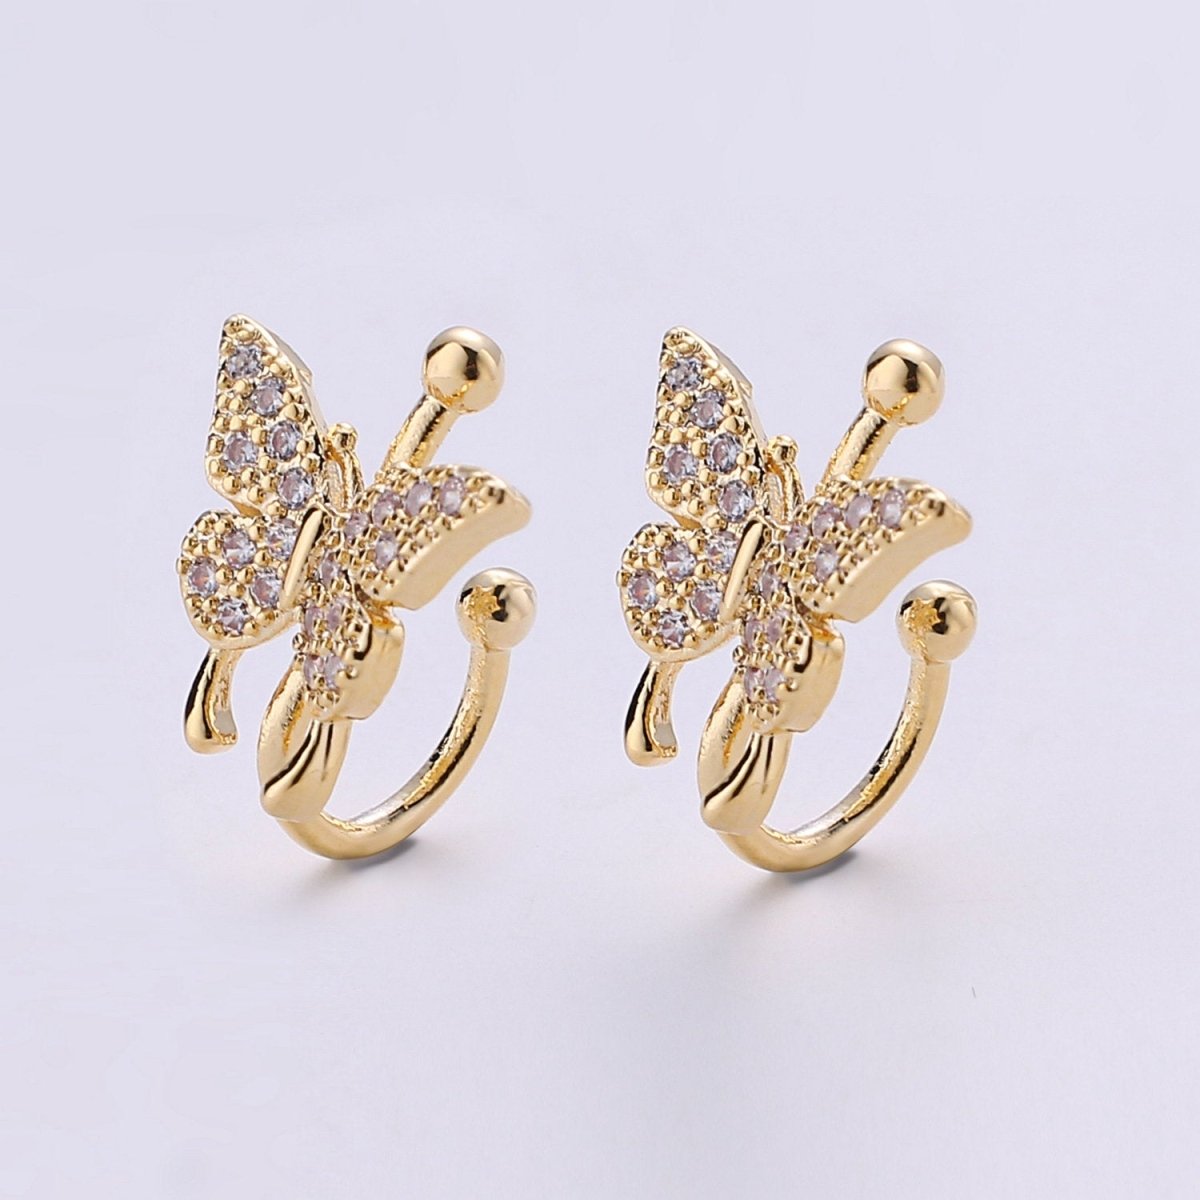 1x Butterfly Ear Cuff Ear Wraps - Butterfly Jewelry - Fake Pierced Earrings - Fake Piercing - Gifts For Teens -Teenage Girl Gift Idea, AI-117 - DLUXCA